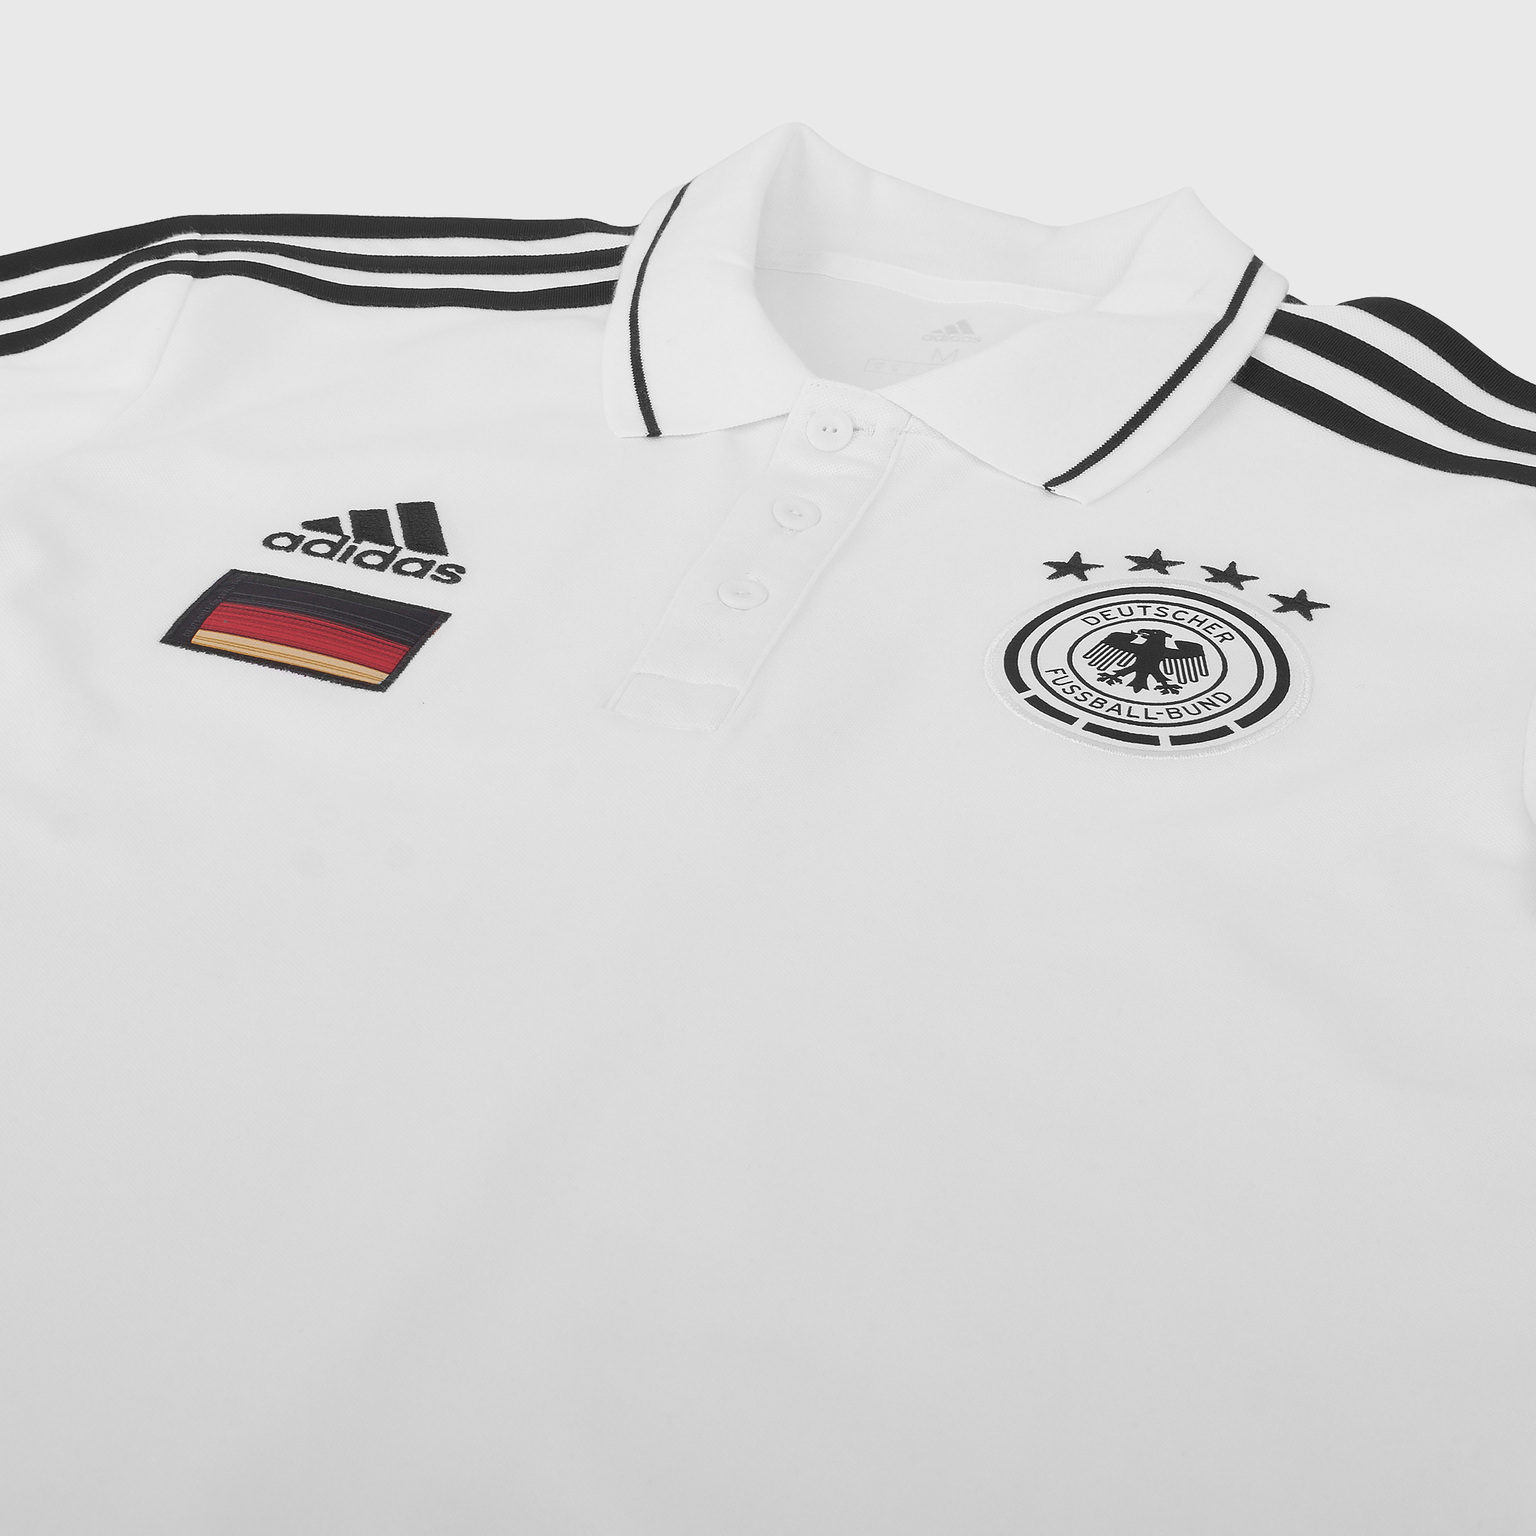 Поло Adidas сборной Германии сезон 2020/21